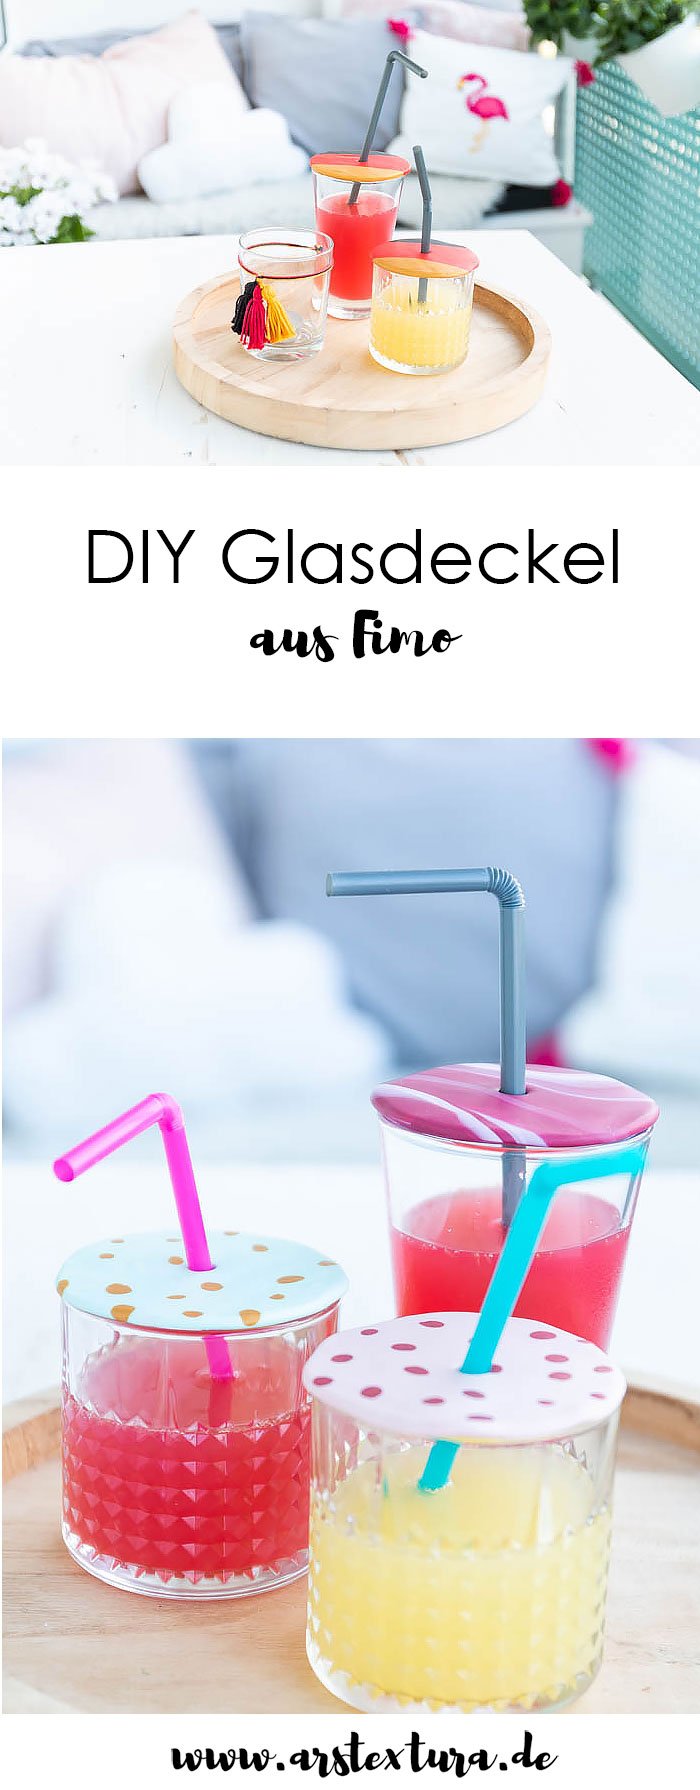 DIY Glasdeckel aus Fimo basteln - So kommen nie wieder Insekten ins Glas | ars textura - DIY Blog